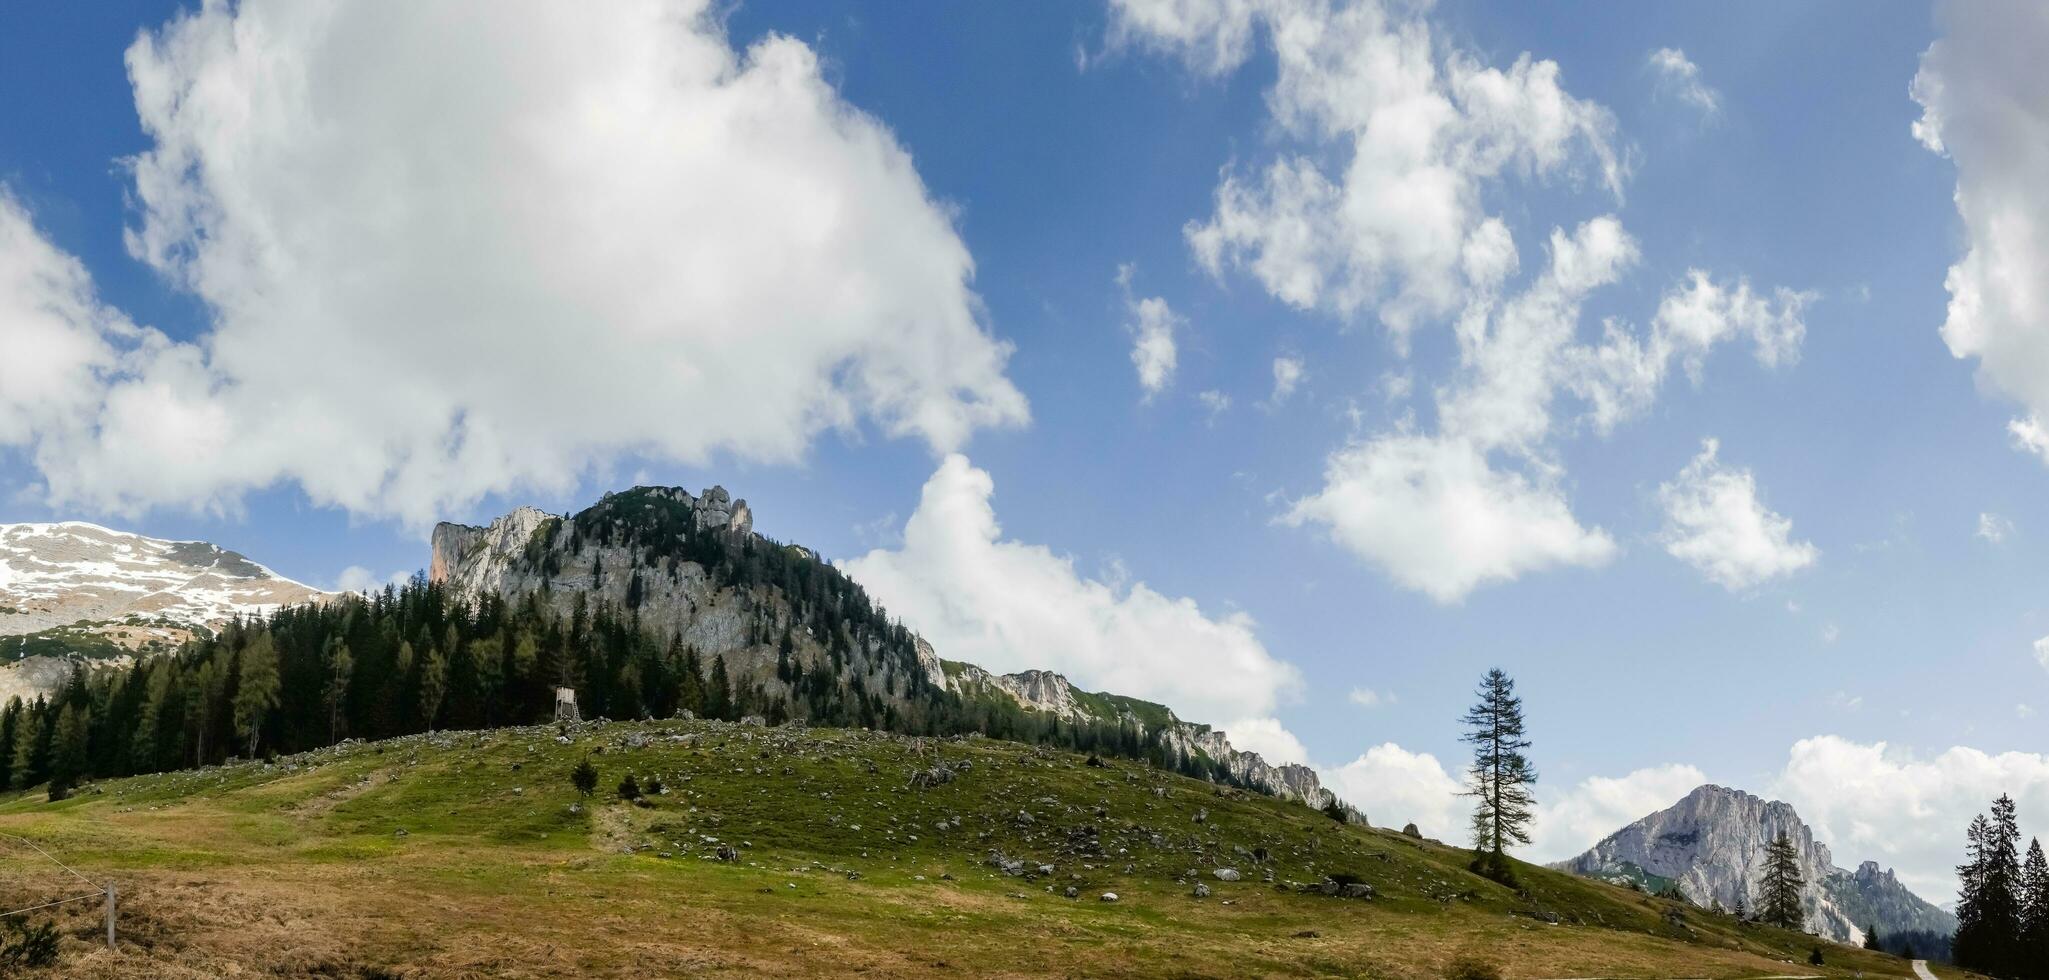 incroyable vue à montagnes et prés avec blanc des nuages sur bleu ciel sur le wurzeralm dans L'Autriche photo